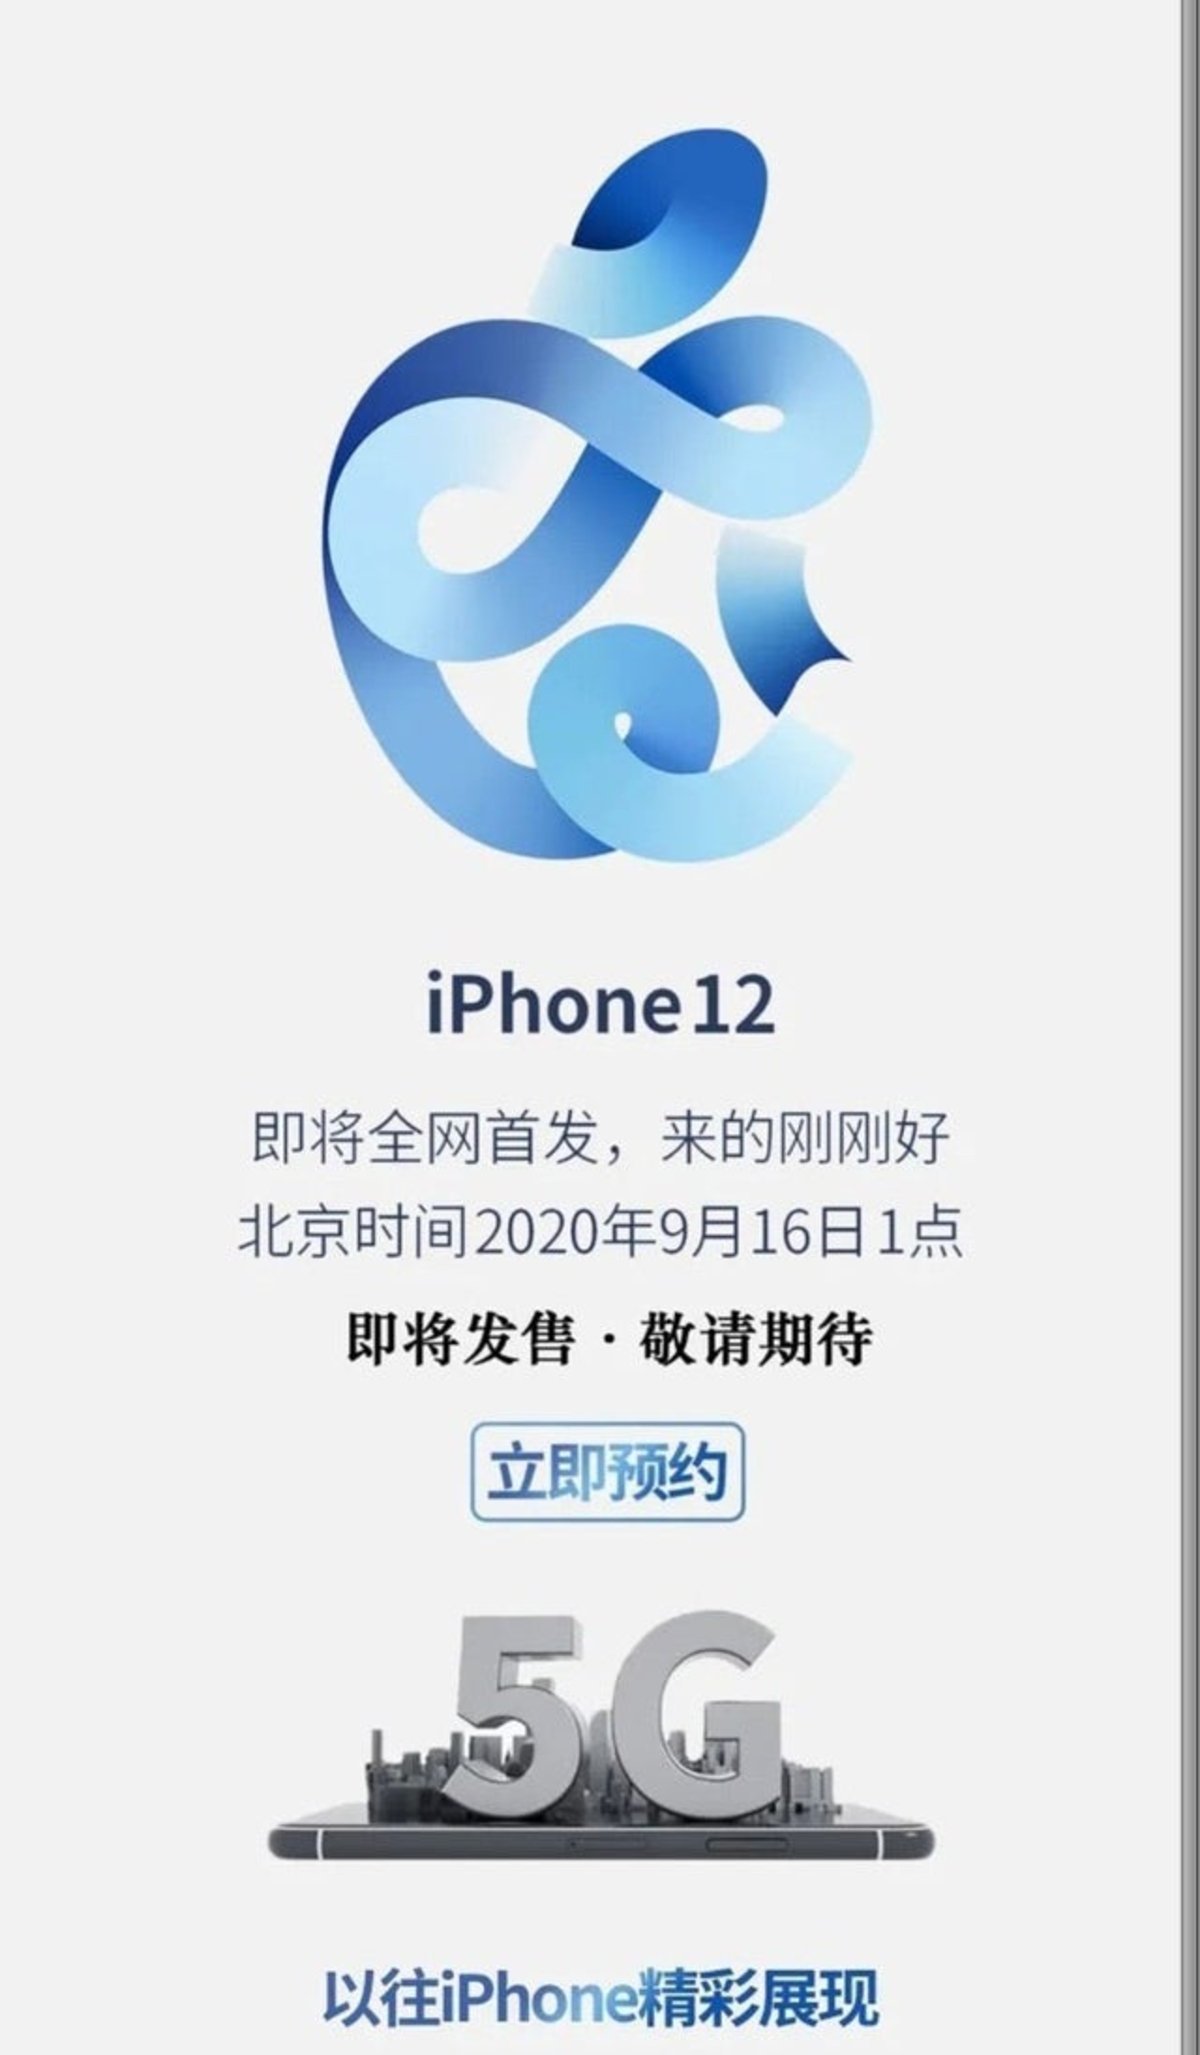 iPhone 12 chino